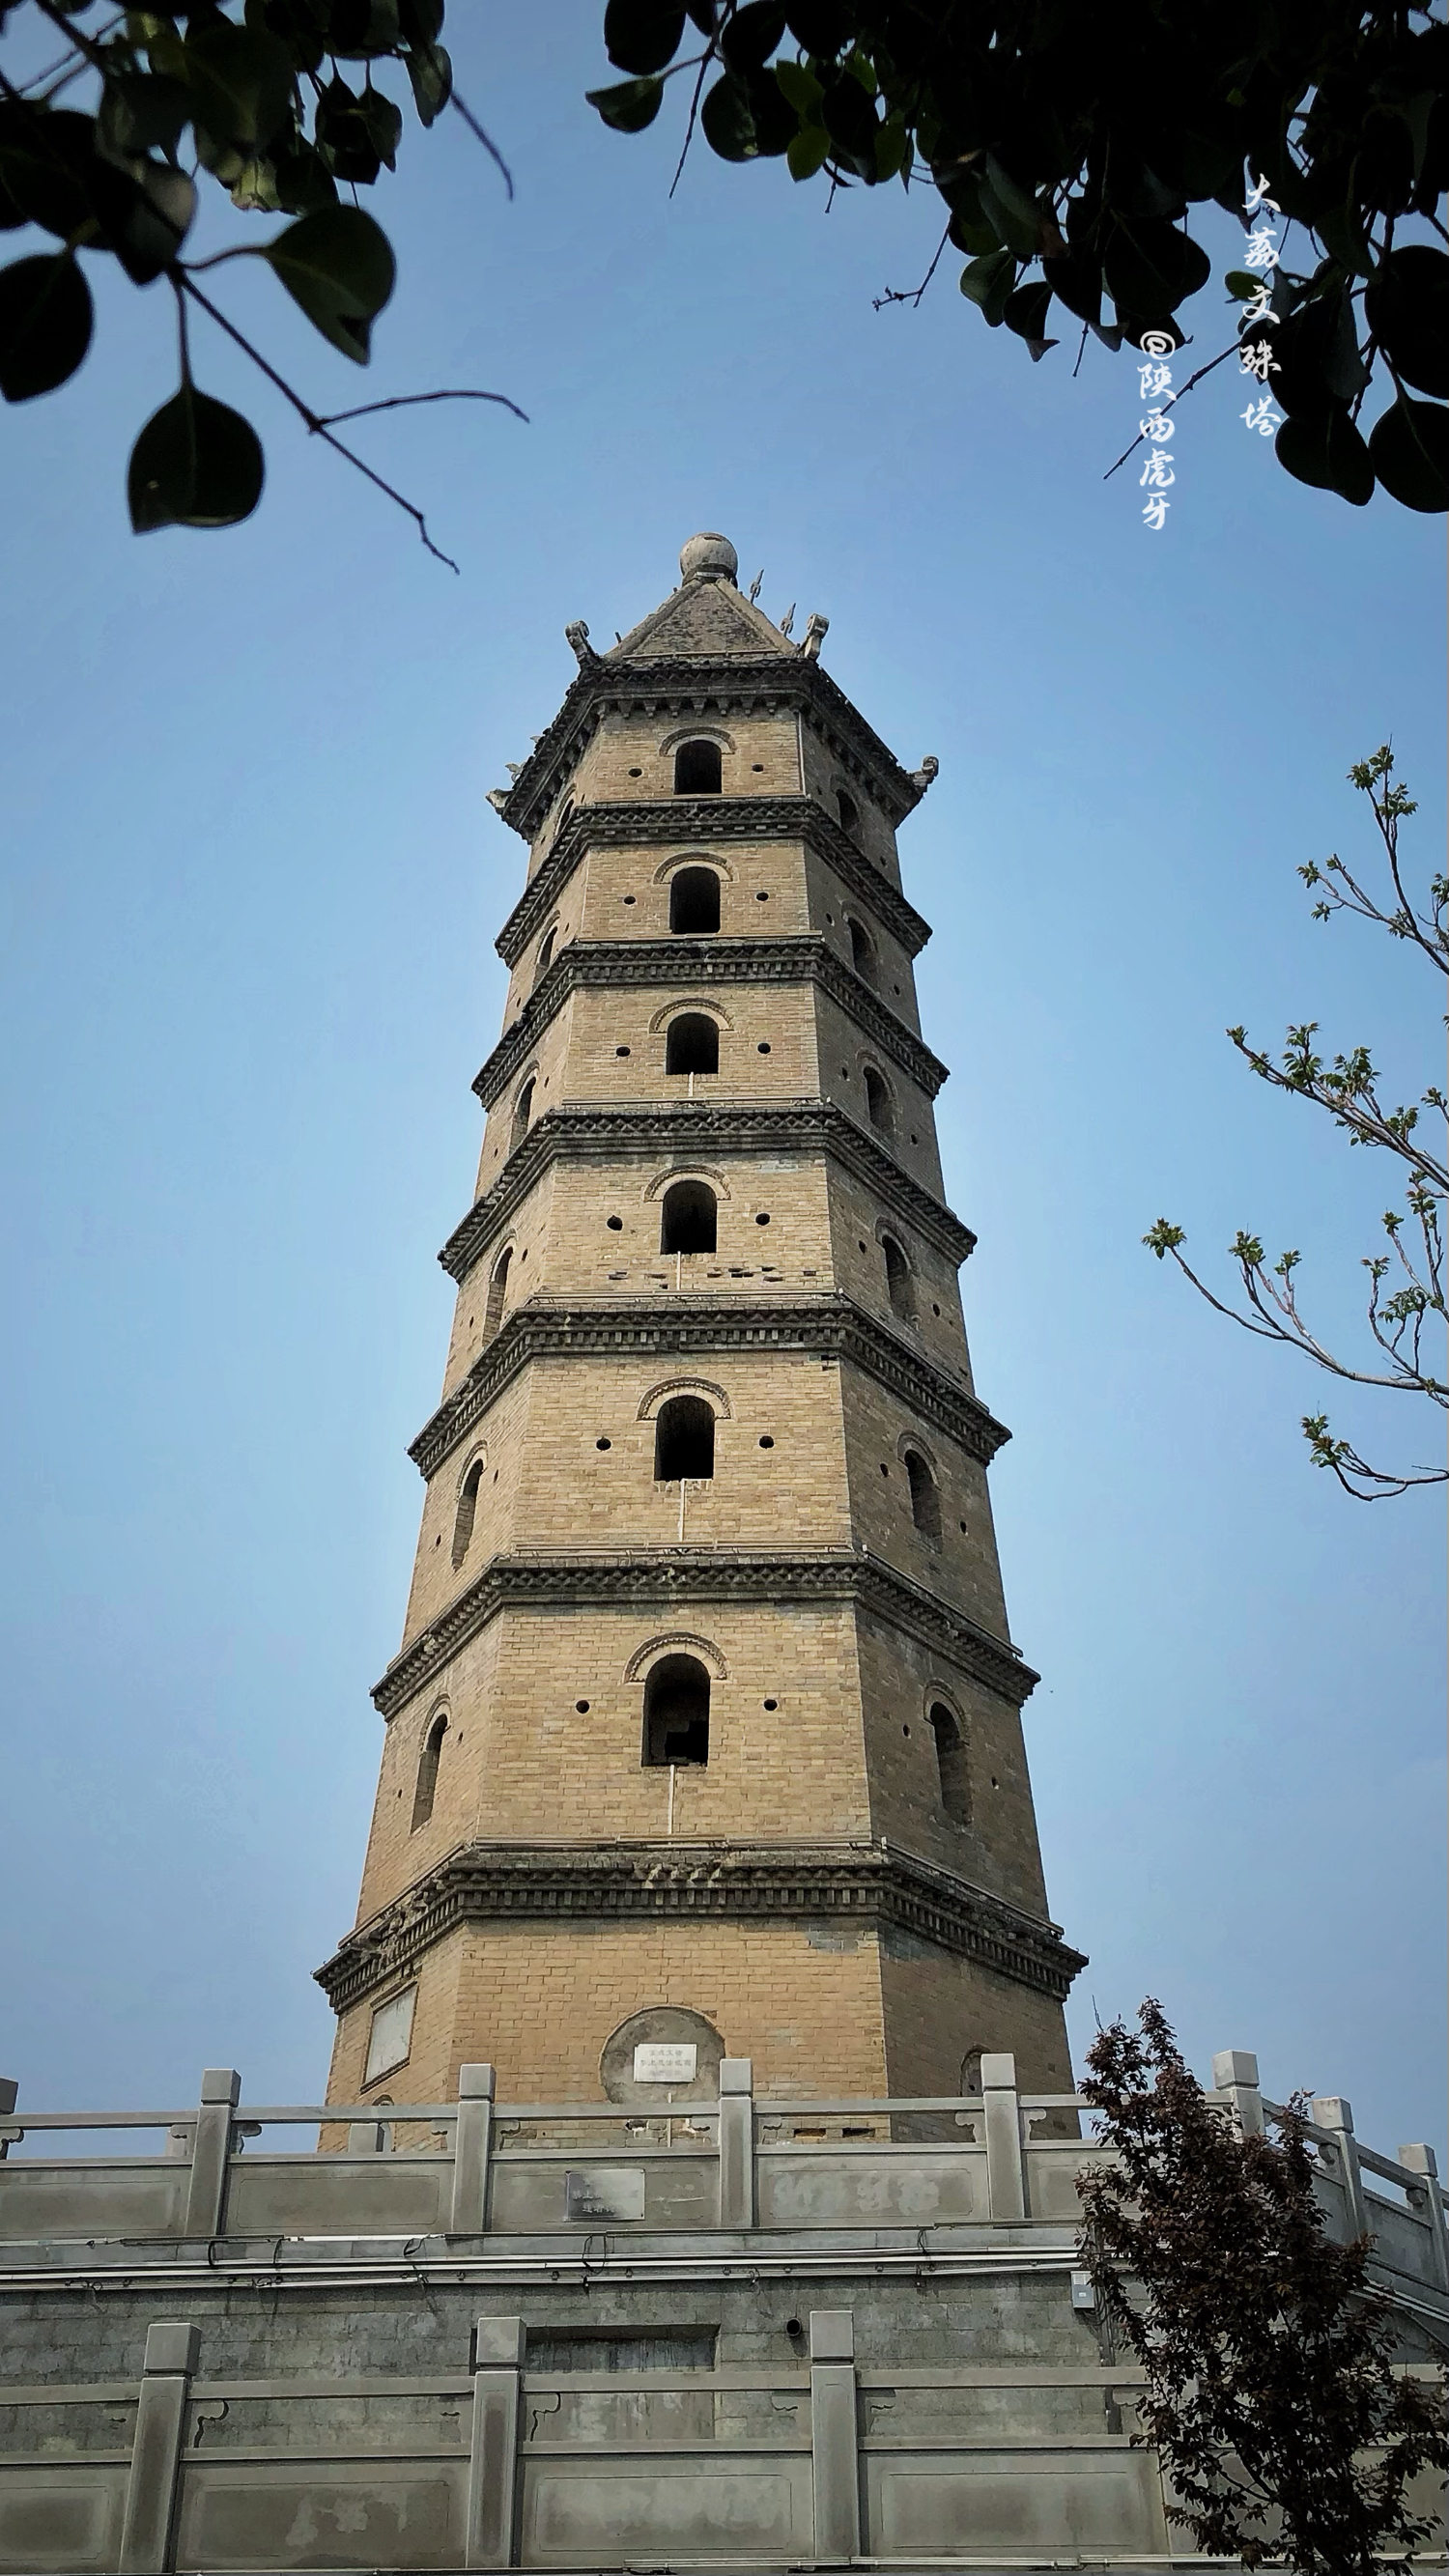 【大荔文殊塔】位于大荔县城北大街与环城北路相汇的十字路口，现为县级文物保护单位。文殊塔因“文殊阁”而